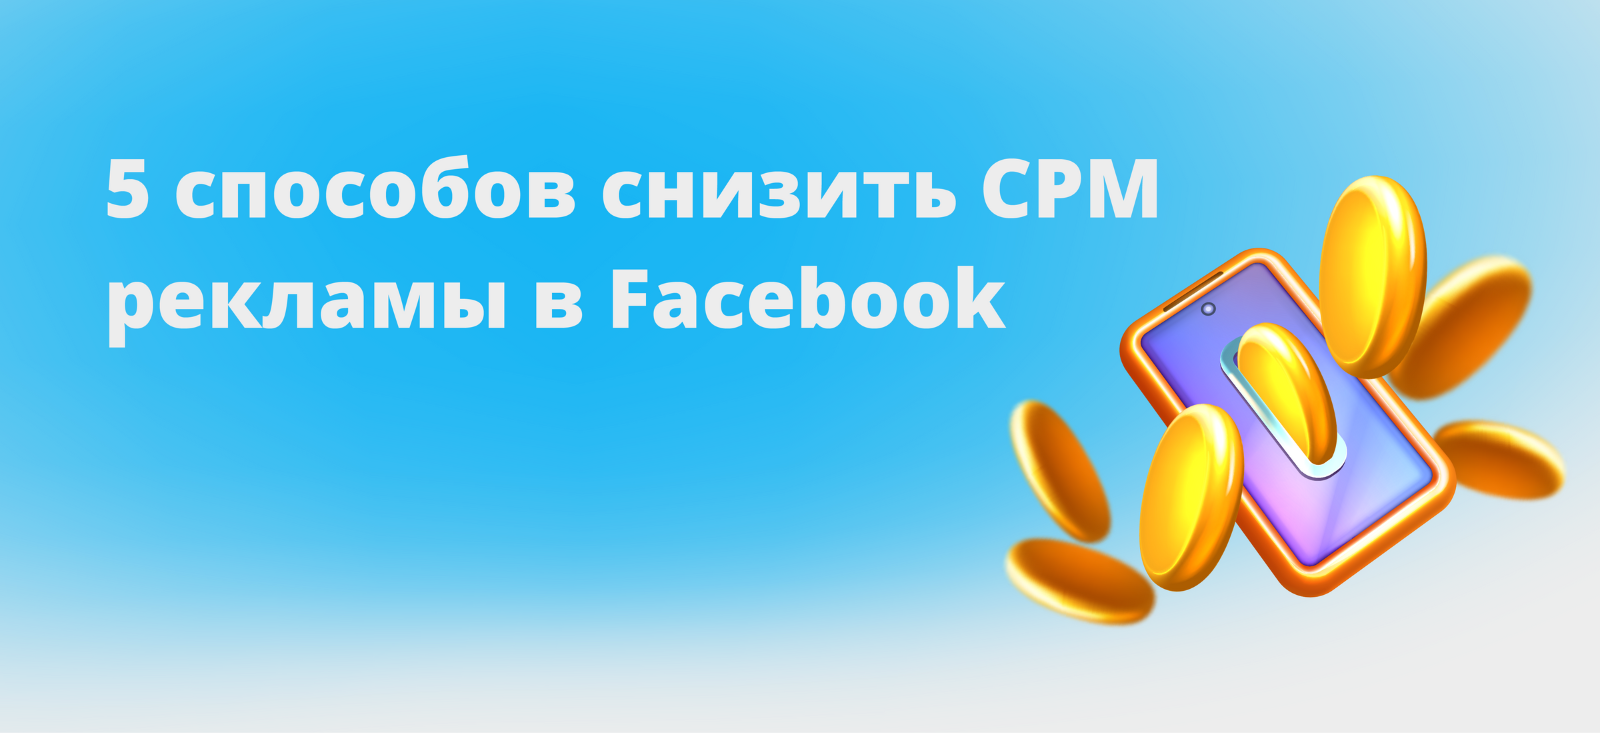 5 советов по снижению CPM рекламы в Facebook